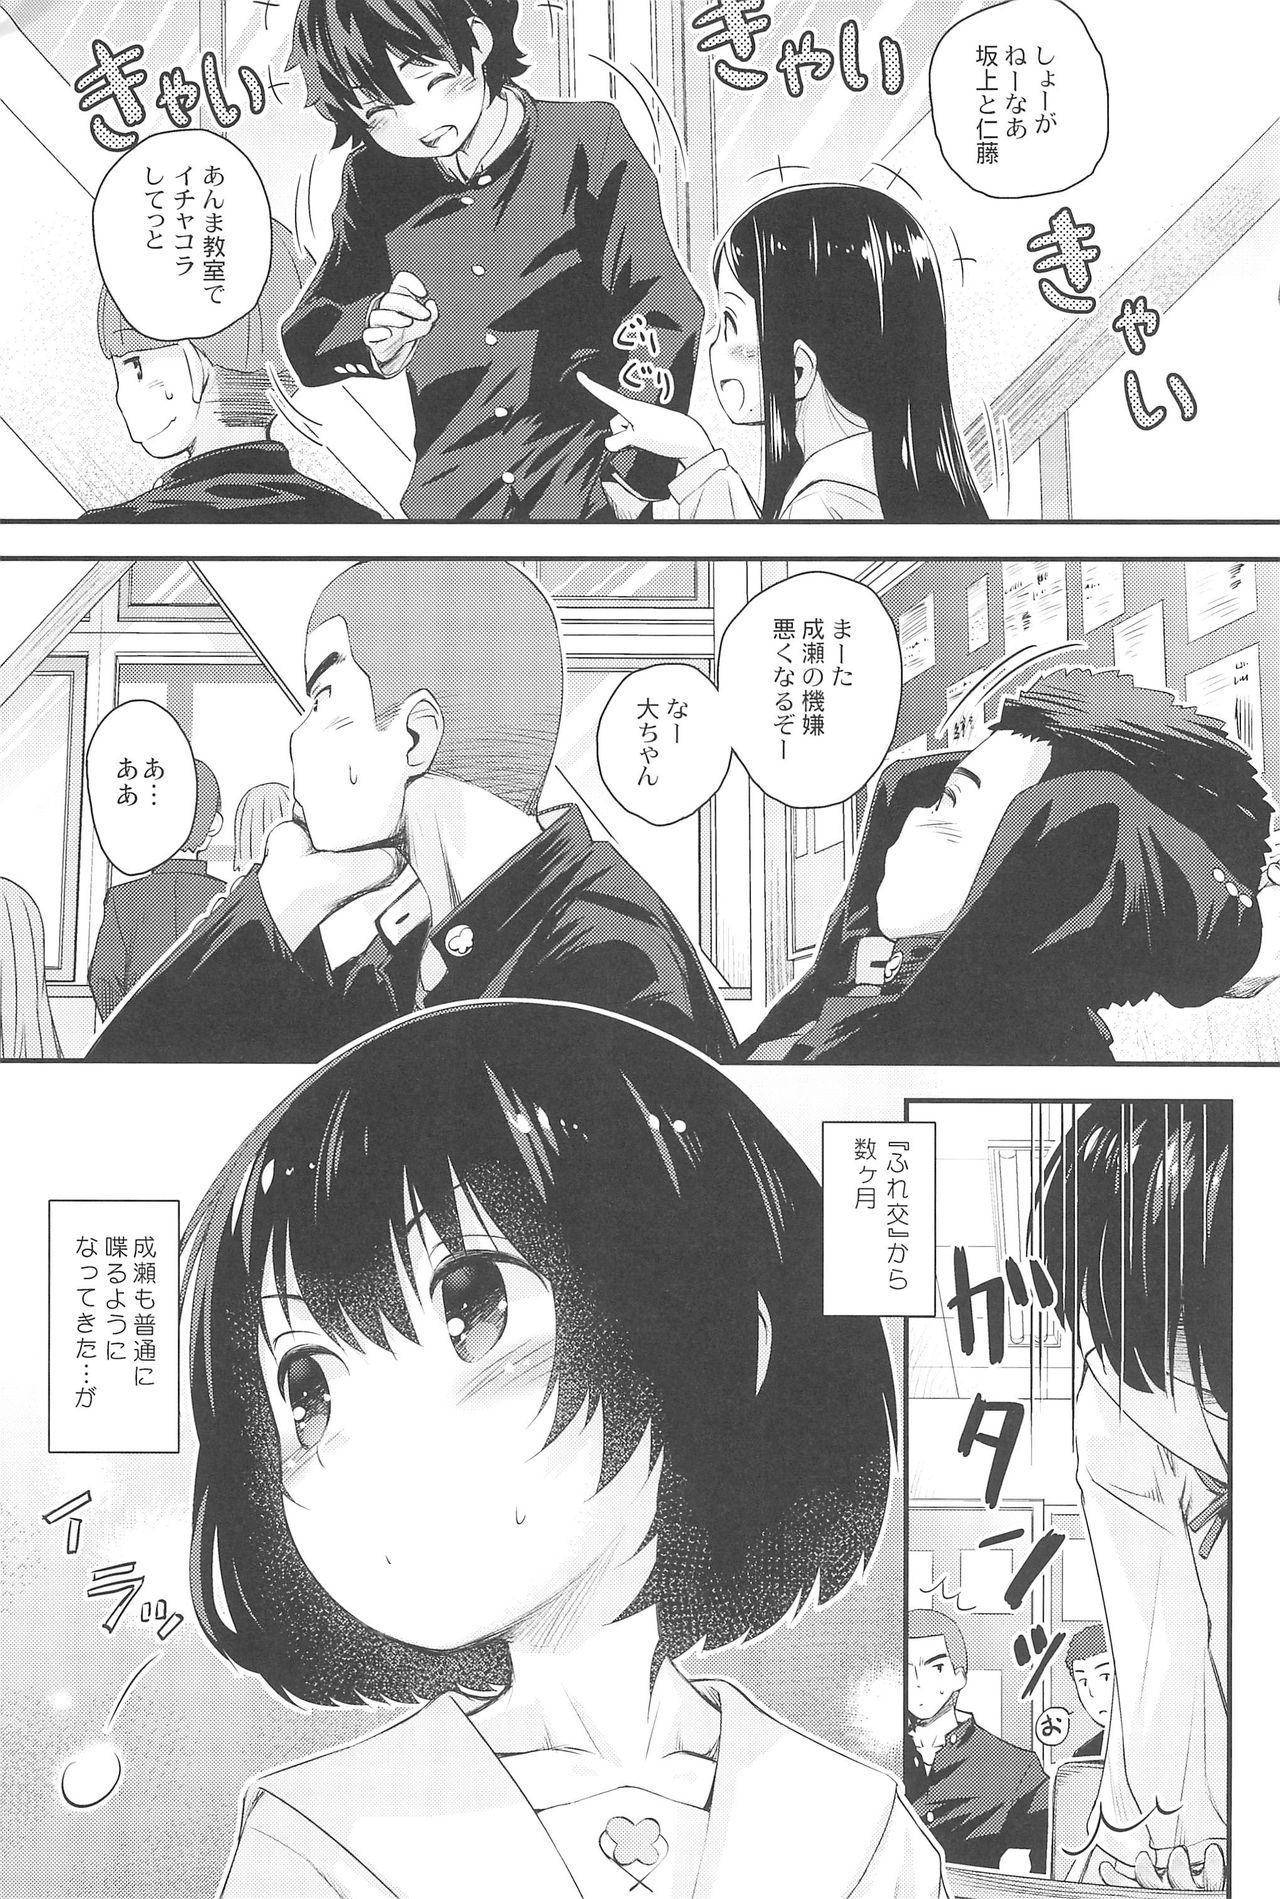 Teenage Sex Jun-chan to Oshiro de Sakebikko shitainda. - Kokoro ga sakebitagatterunda. Pmv - Page 5